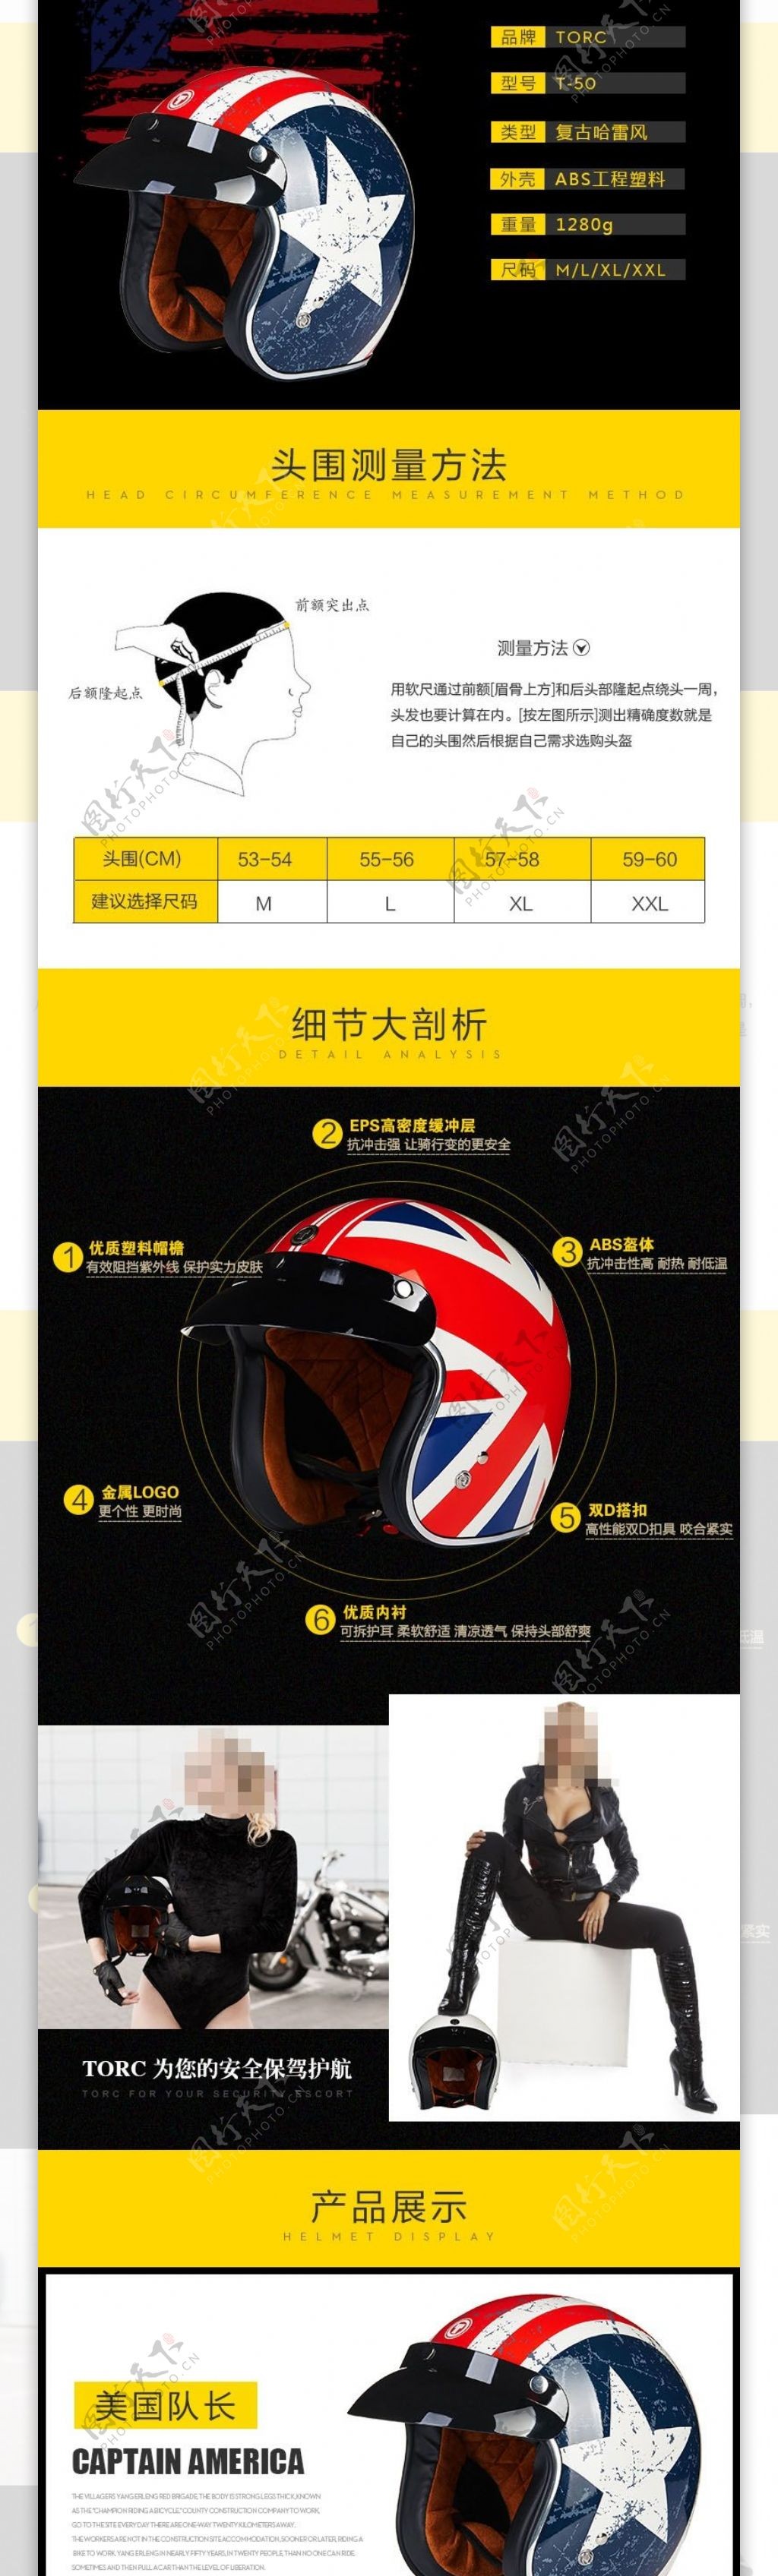 哈雷摩托车头盔详情页设计